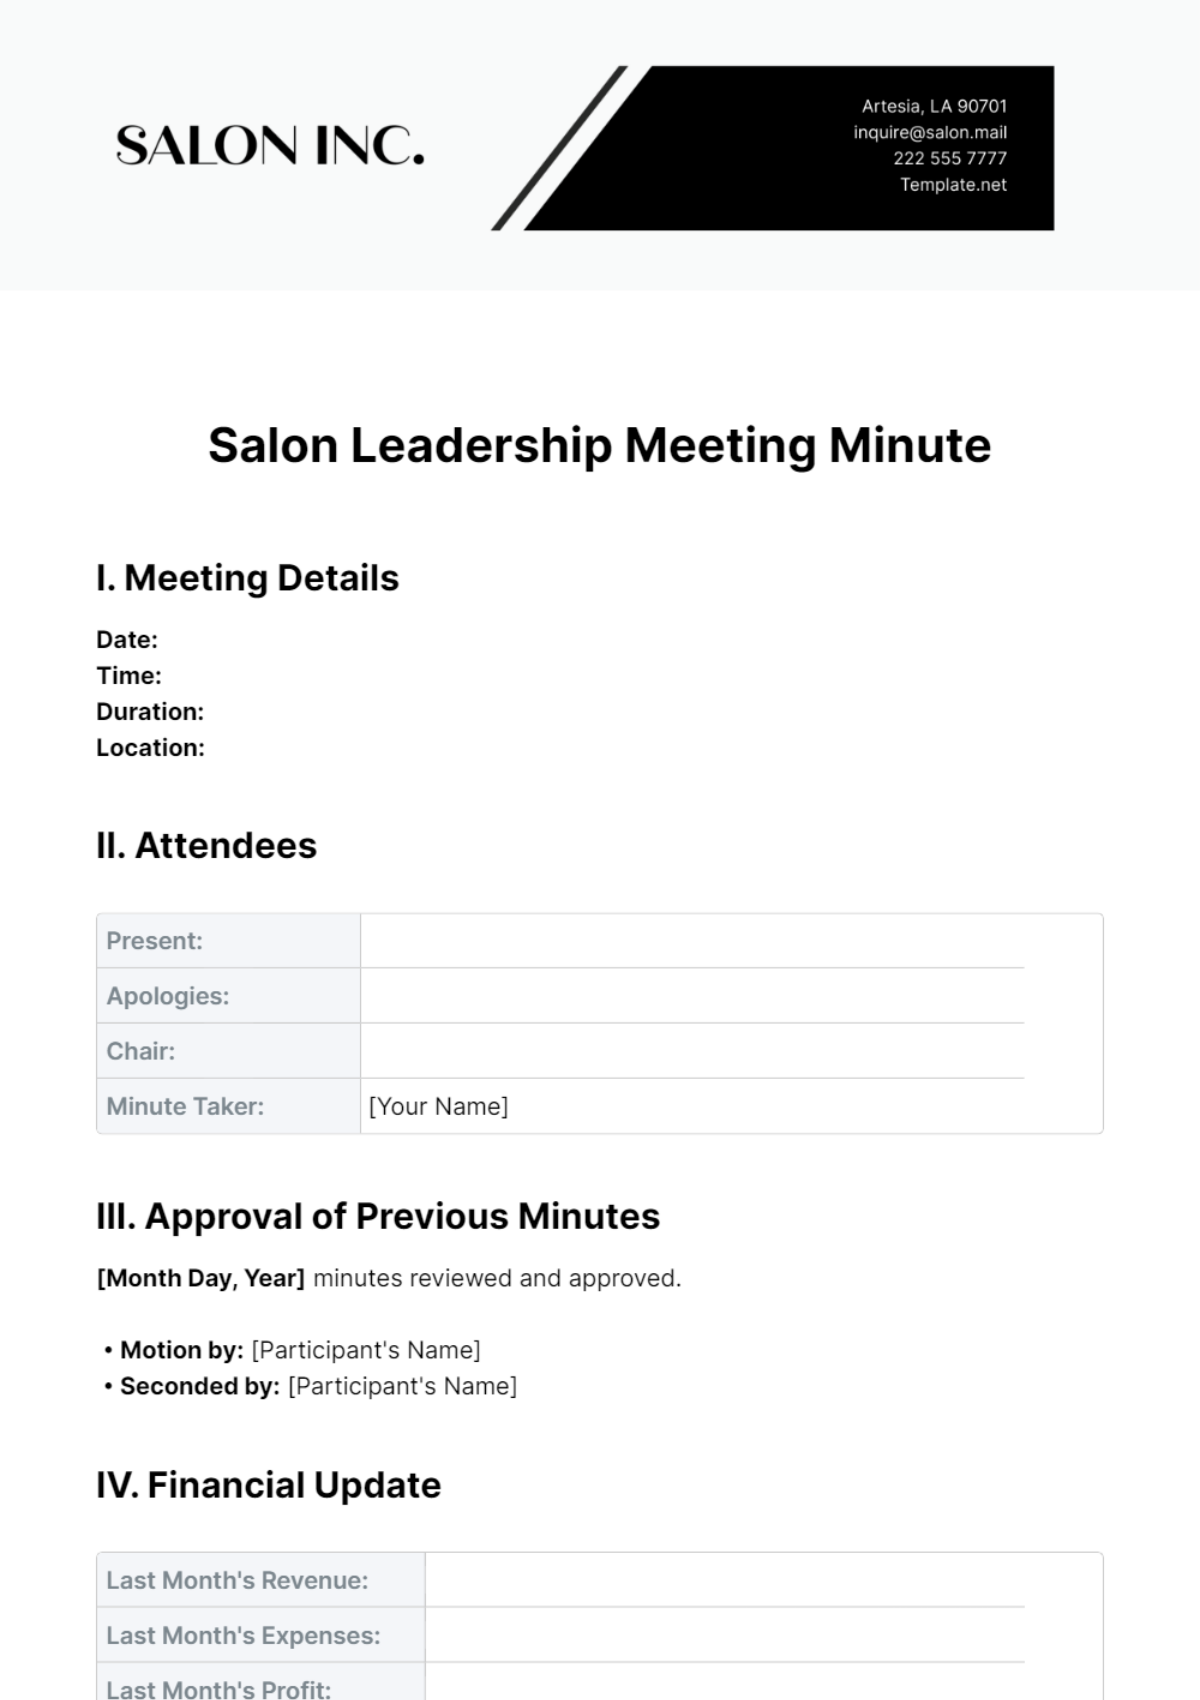 Salon Leadership Meeting Minute Template